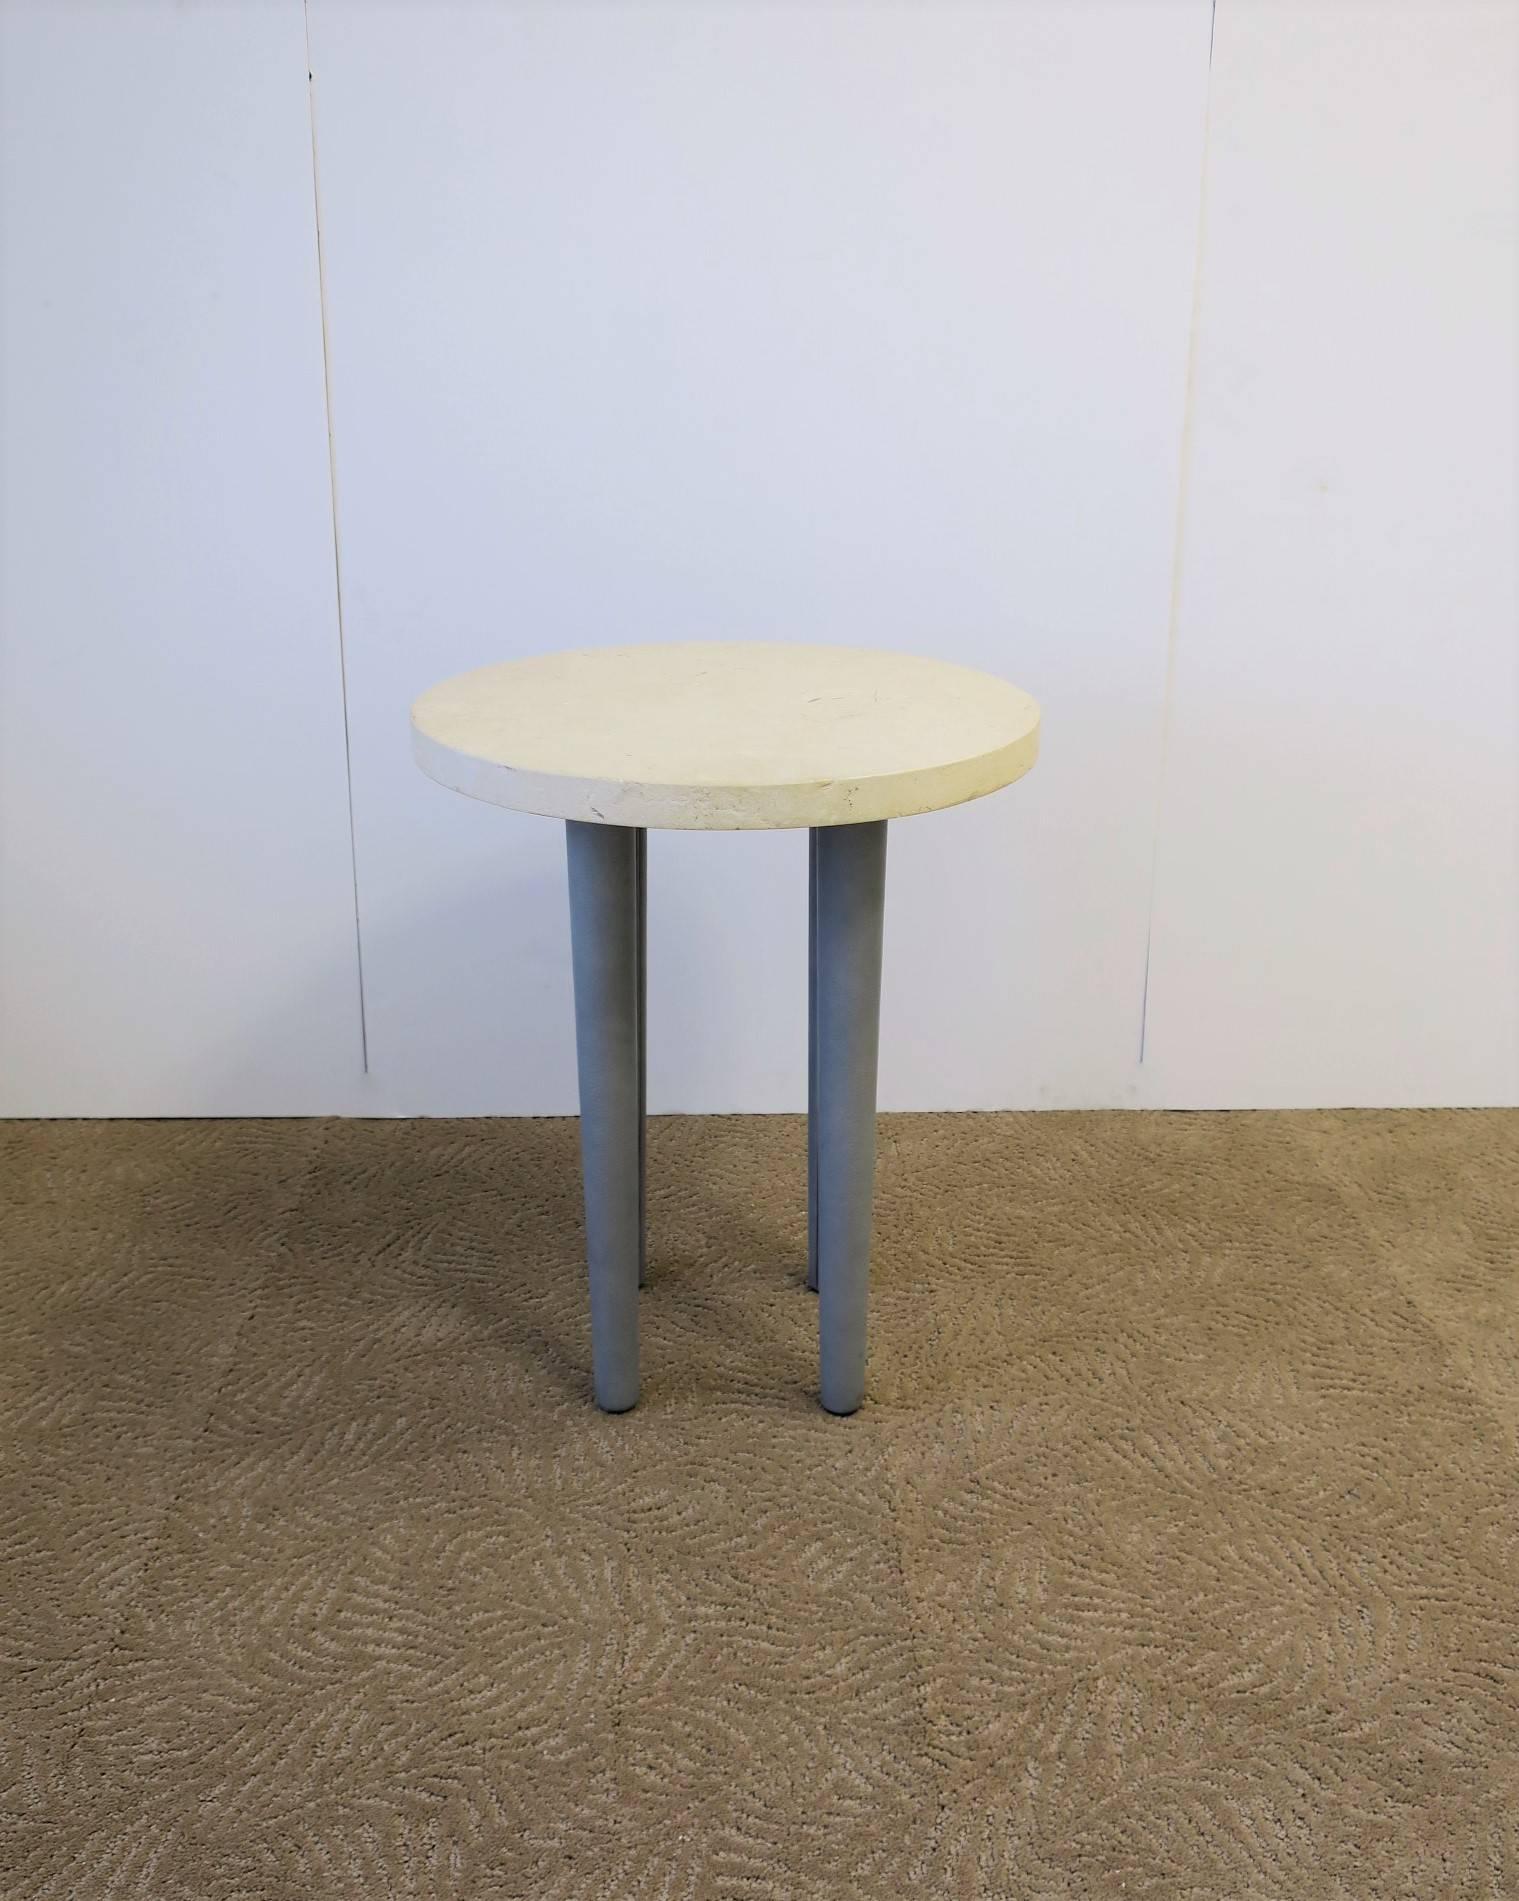 Importante table ronde ou table à boissons post-moderne en pierre et en cuir, vers la fin du XXe siècle. Le plateau en pierre ronde sable/beige (semblable au marbre travertin) a une épaisseur importante de 1,38 pouces et est légèrement texturé comme